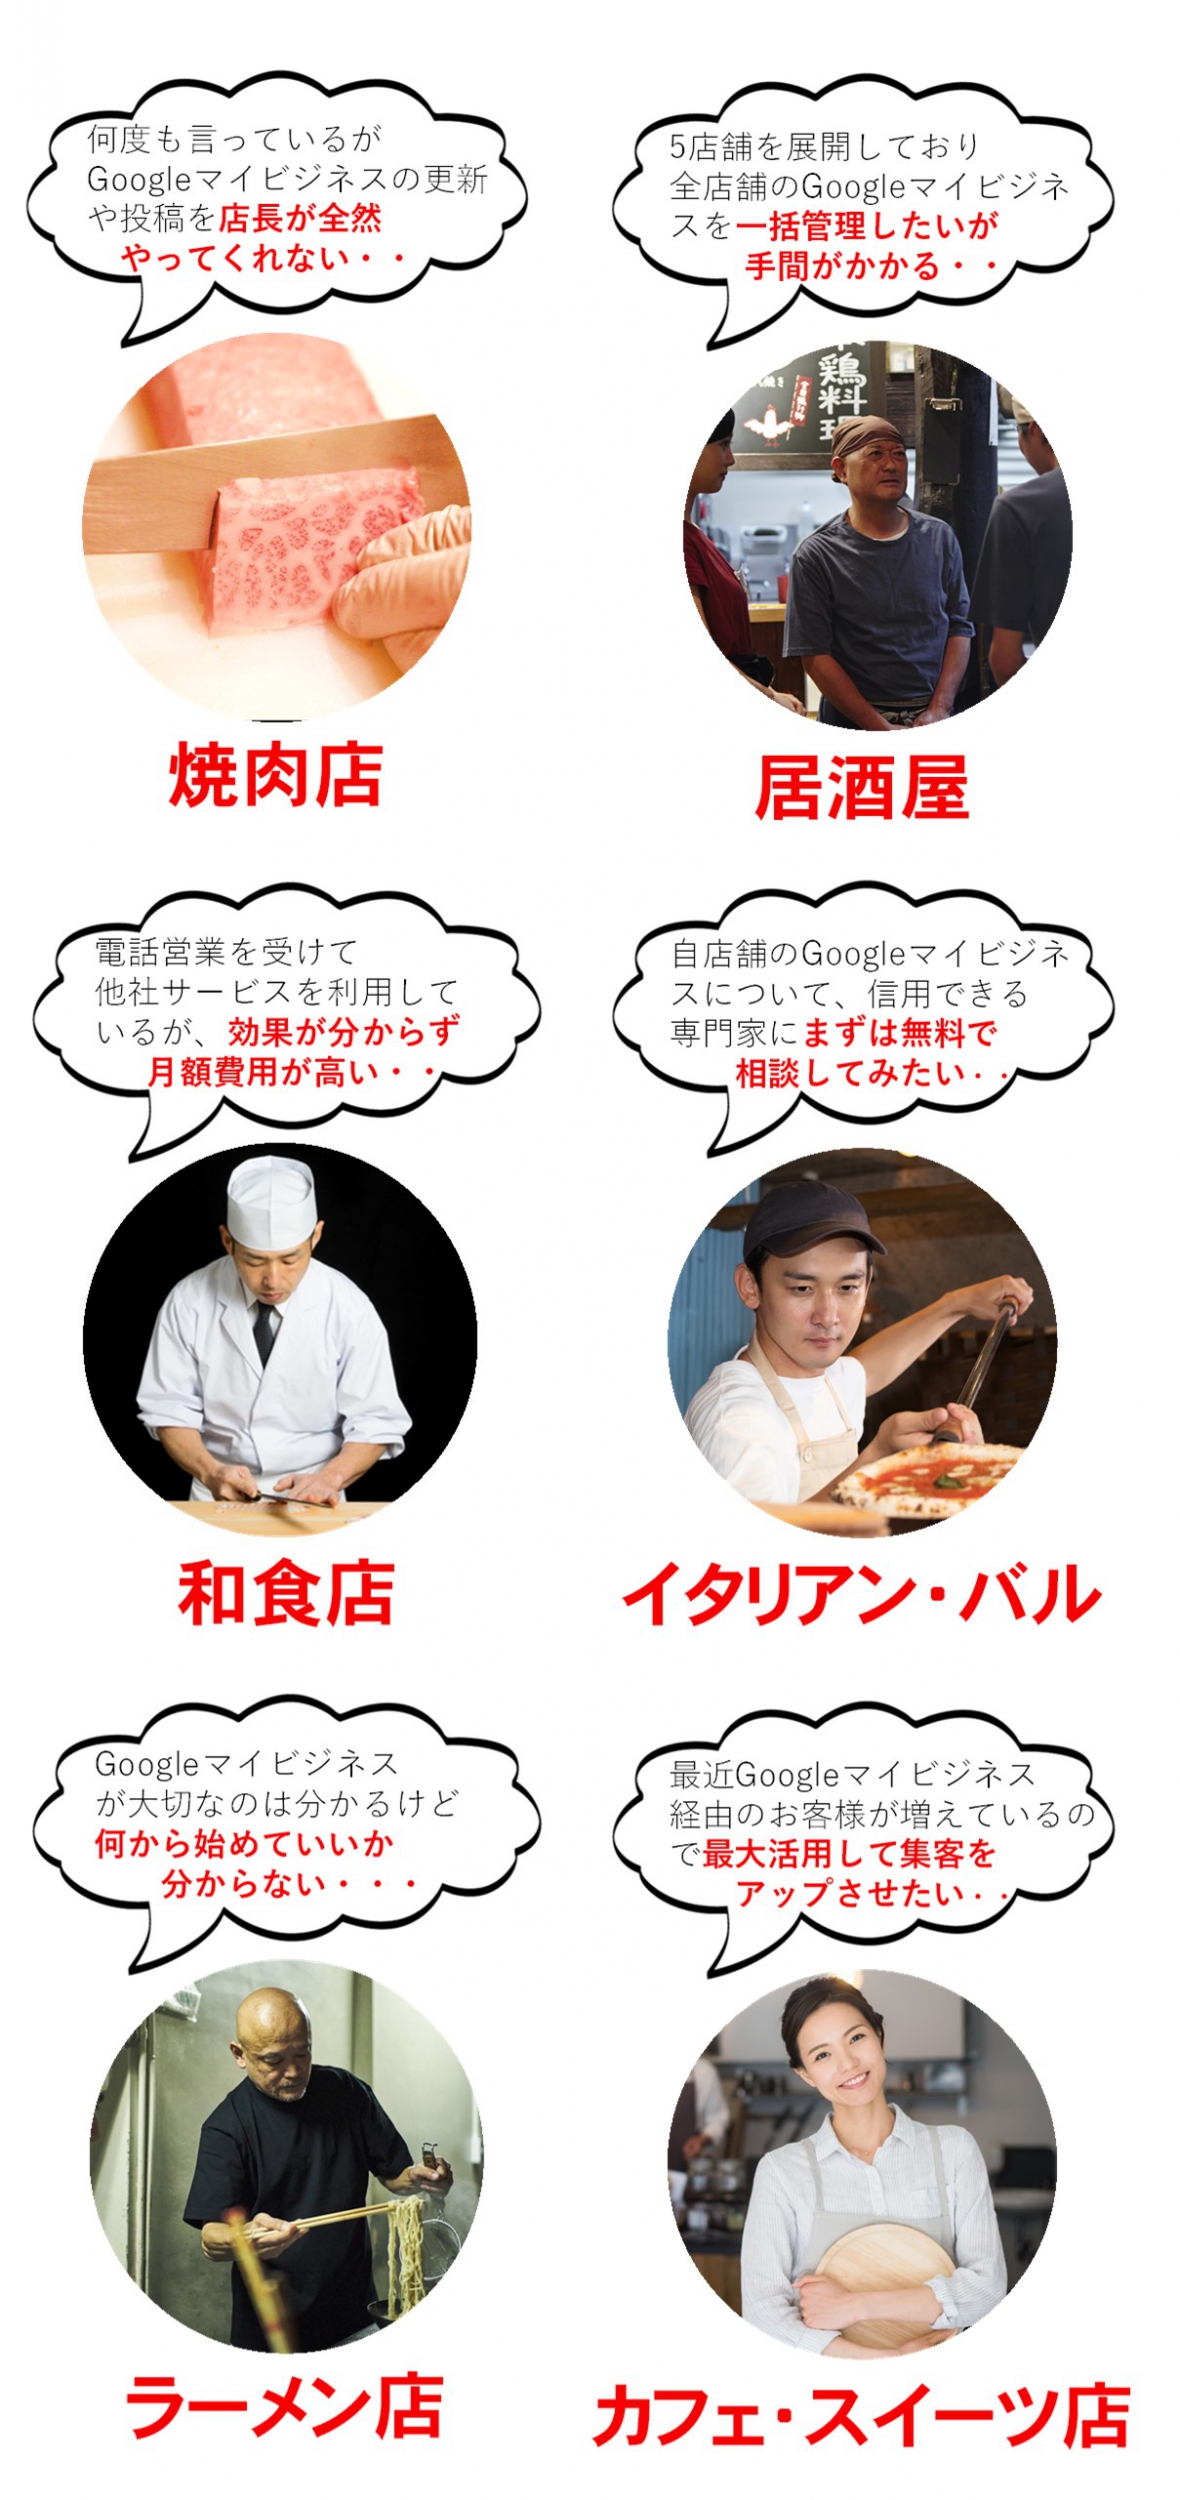 【月額5,500円】飲食店特化のGoogleマイビジネス対策